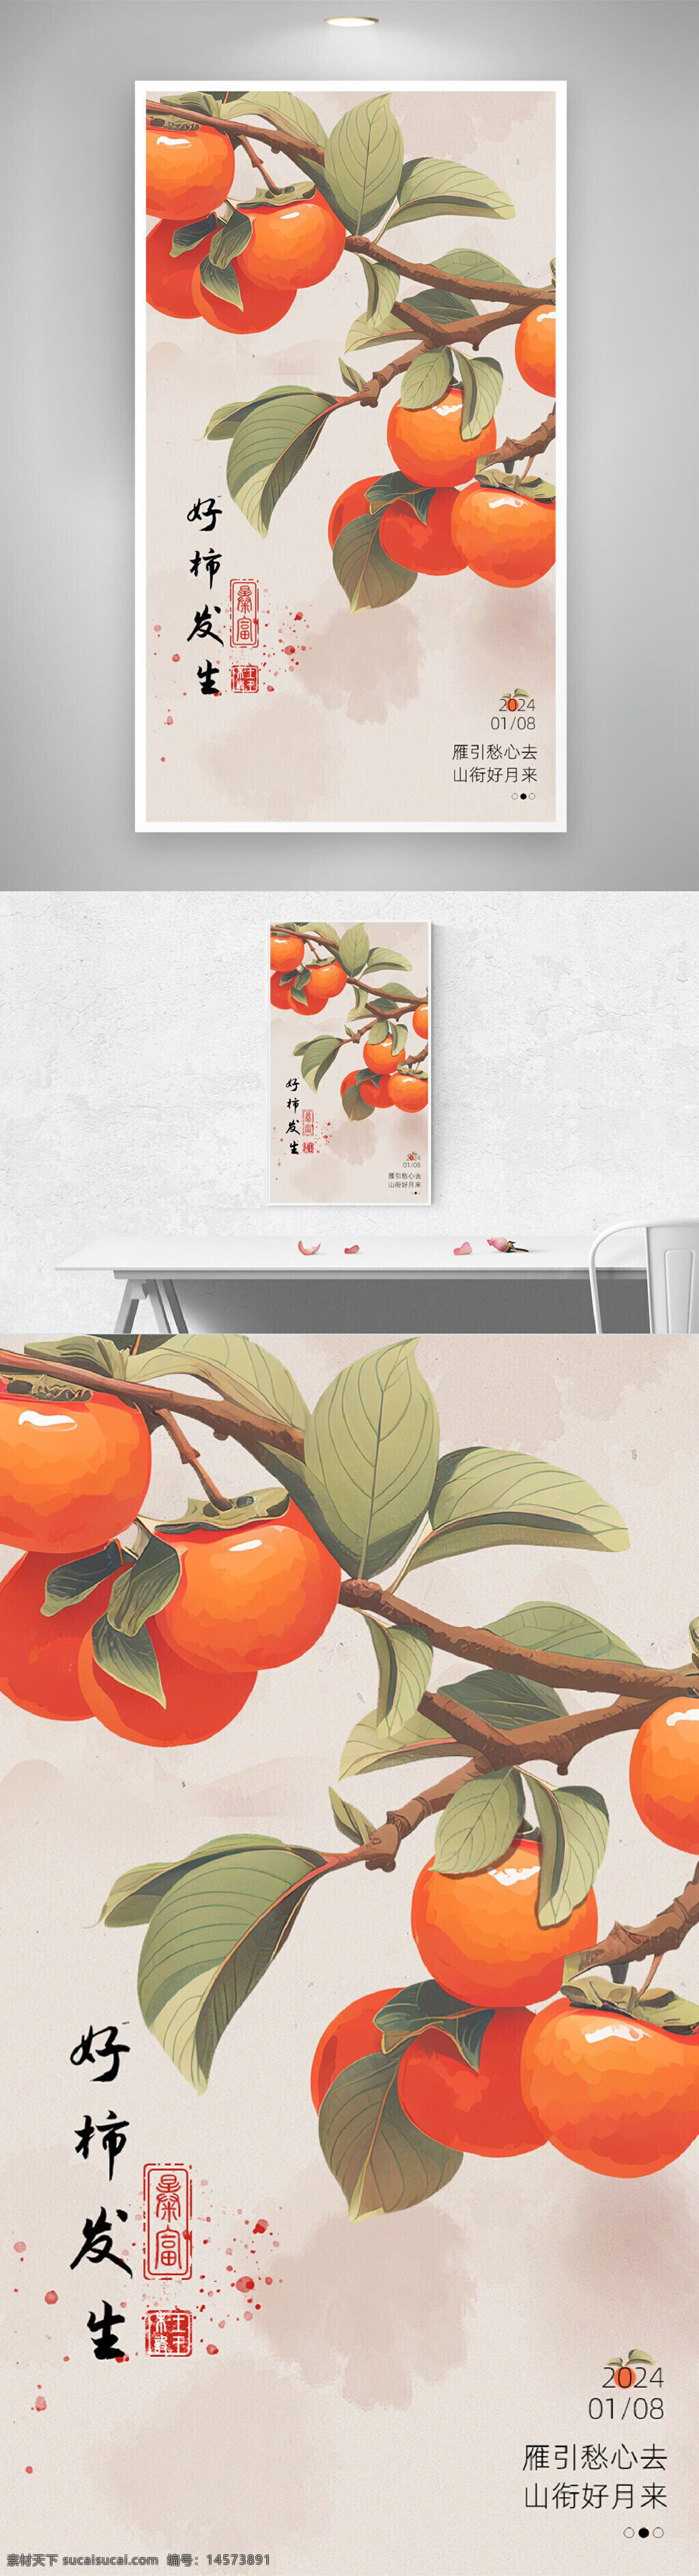 好事发生海报 柿子红柿插画 中国风古典风 电商手机海报 柿柿事事如意 柿子花生手绘 设计 广告设计 海报设计